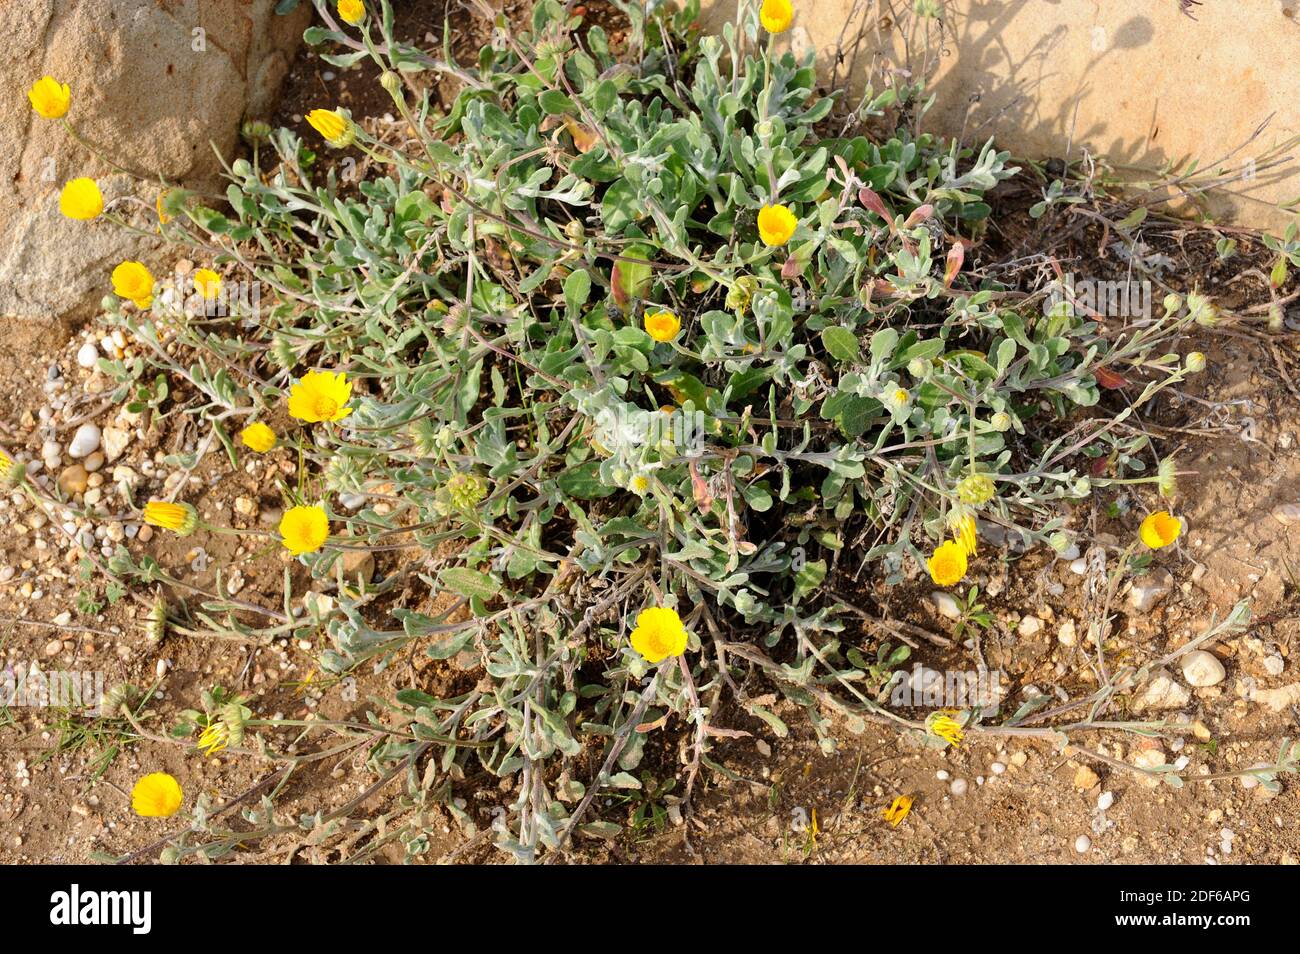 La calendula suffruticosa è una pianta perenne endemica della regione mediterranea. Angiospermi. Asteraceae. Huelva. Andalusia. Spagna. Foto Stock